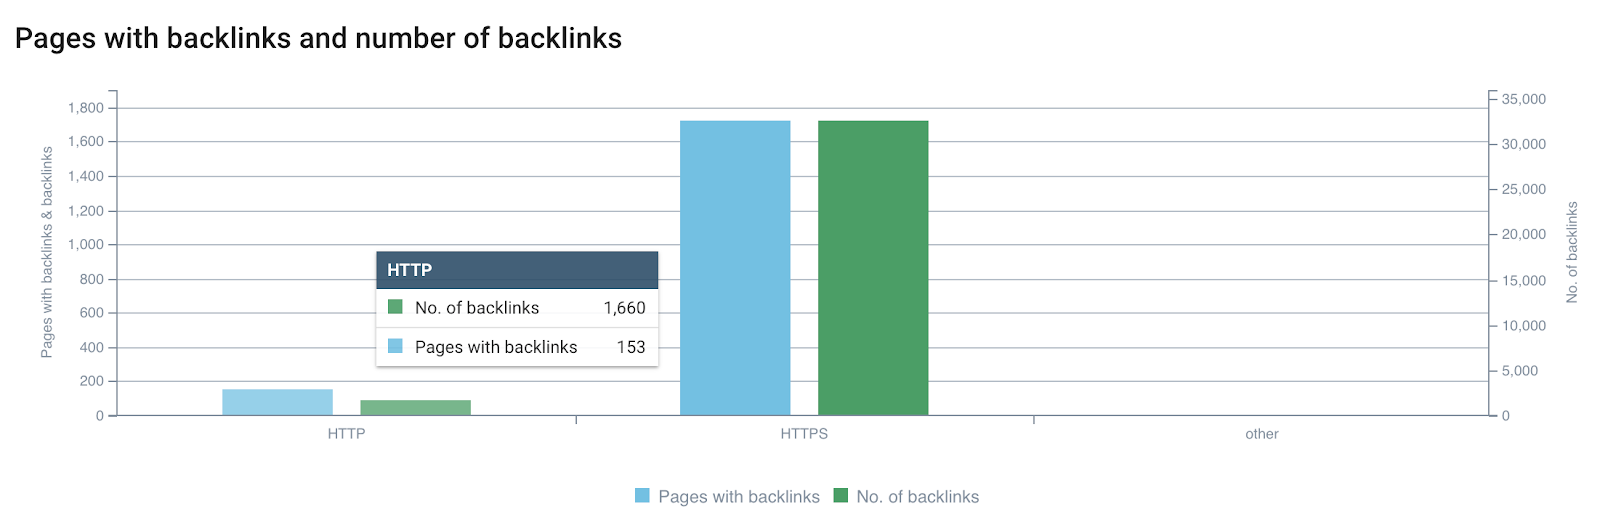 pages avec backlinks and nombre de backlinks